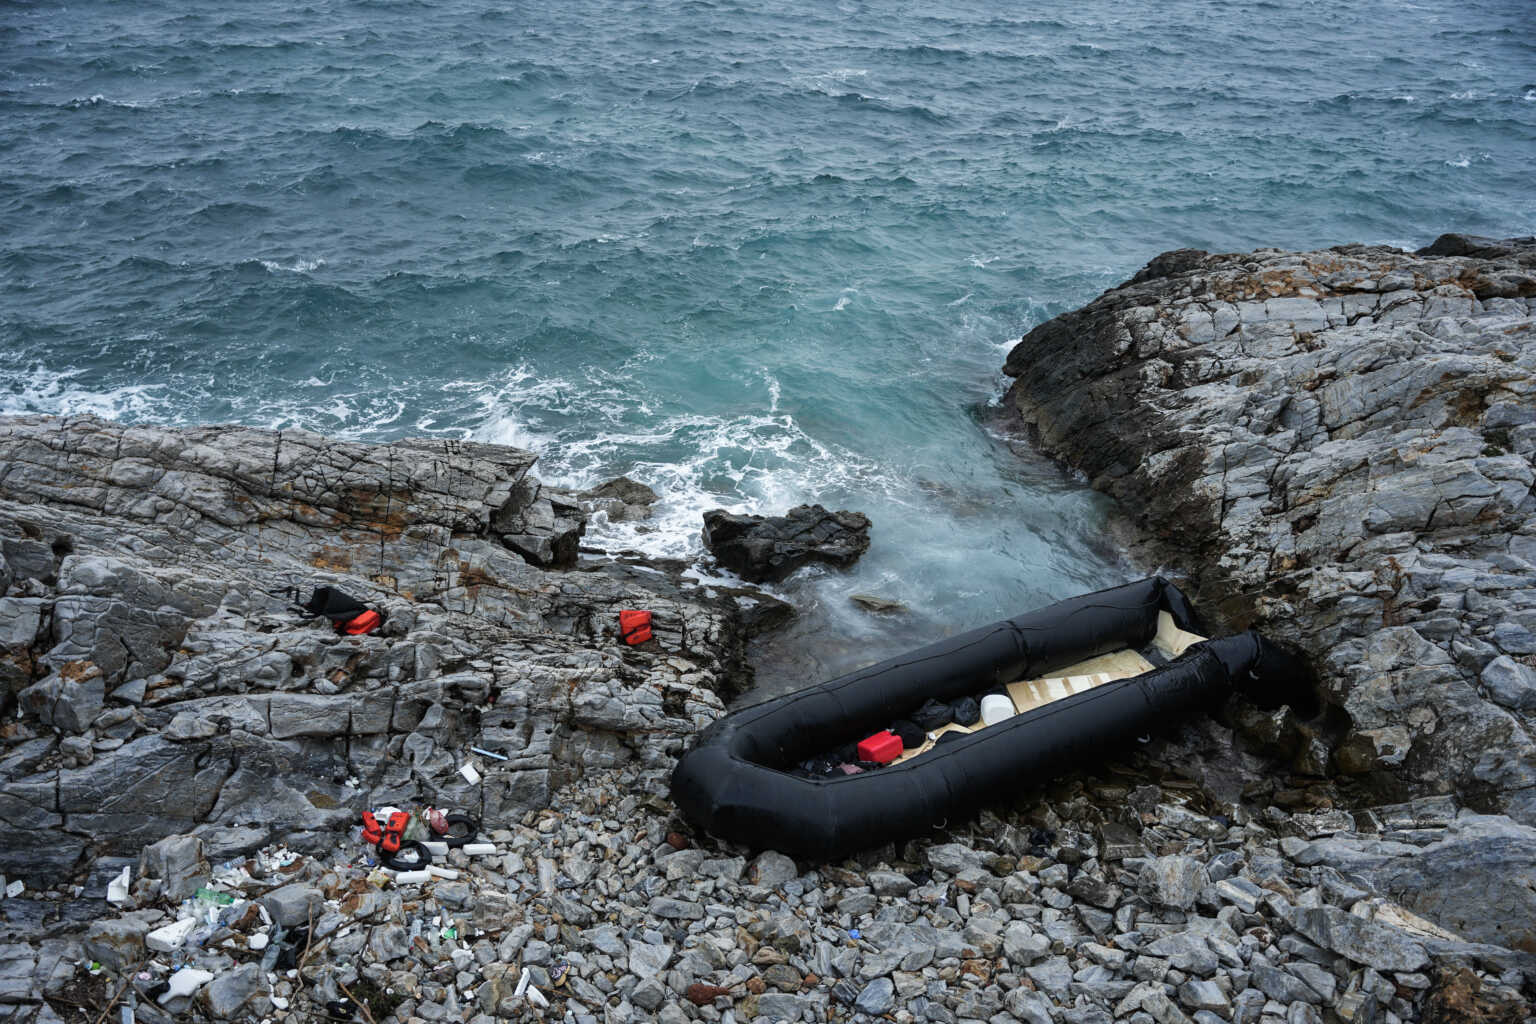 Το BBC επαναφέρει το θέμα των pushbacks και κατηγορεί το ελληνικό Λιμενικό ότι έριξε μετανάστες στη θάλασσα και τους έπνιξε